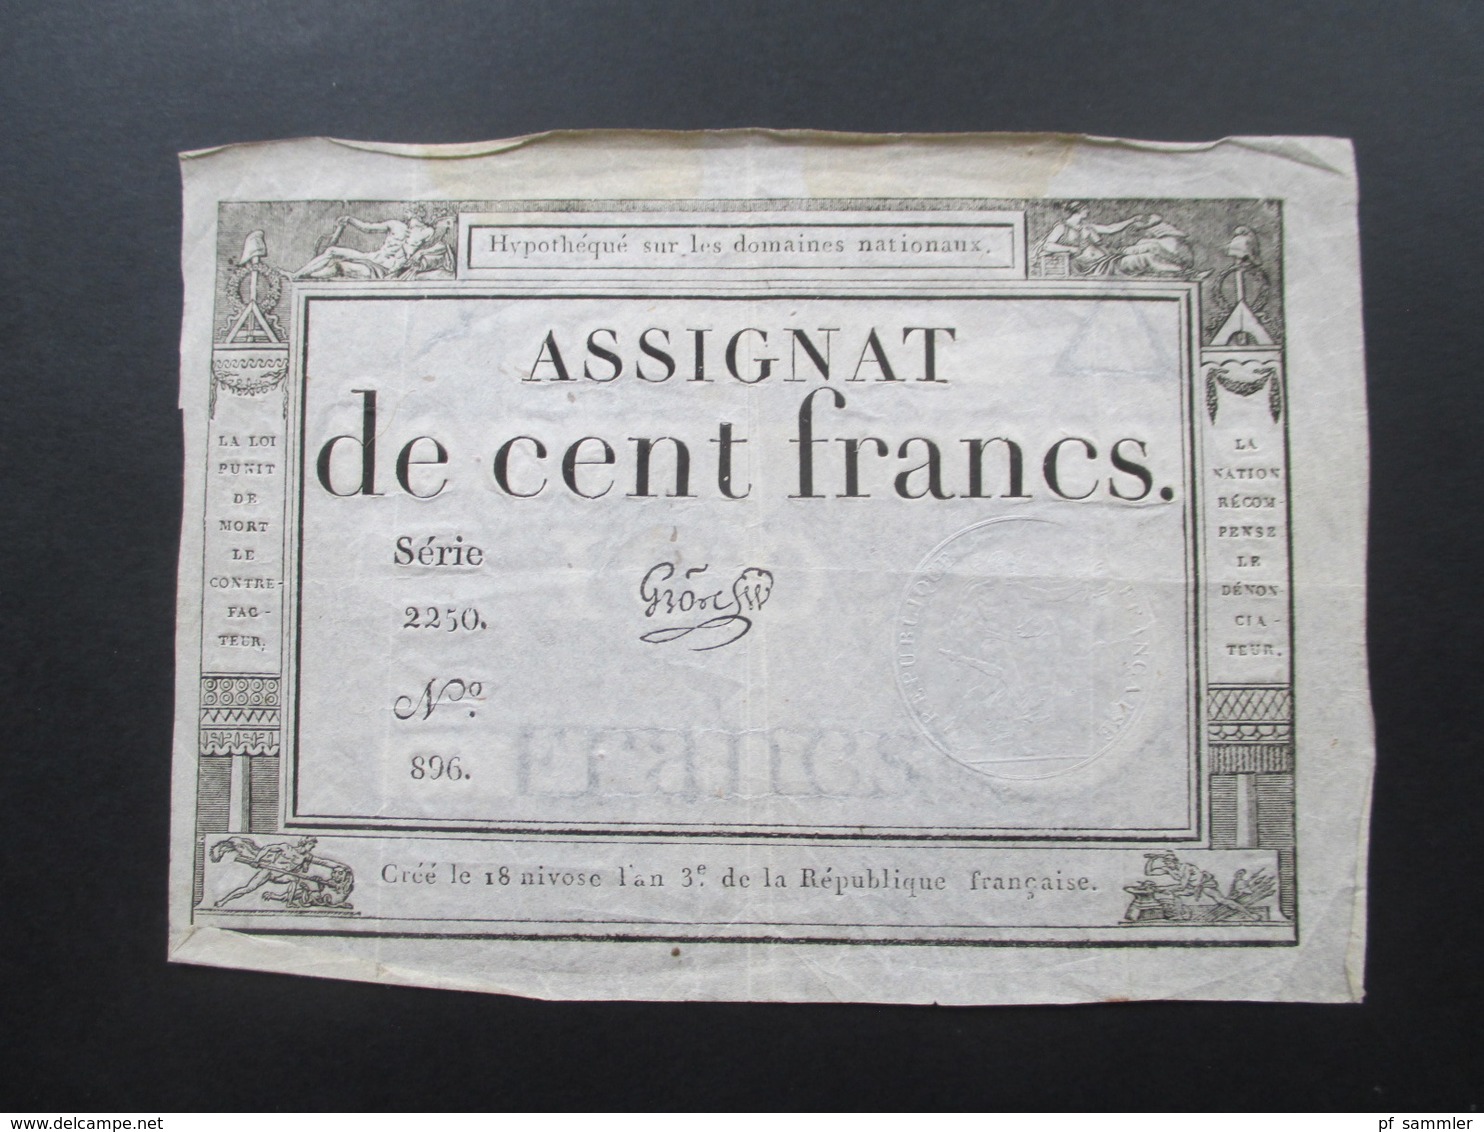 Frankreich Assignat De Cent Francs Serie 2250 No 896. Cree Le 18 Nivose L'an 3e Republique Francaise - ...-1889 Tijdens De XIXde In Omloop